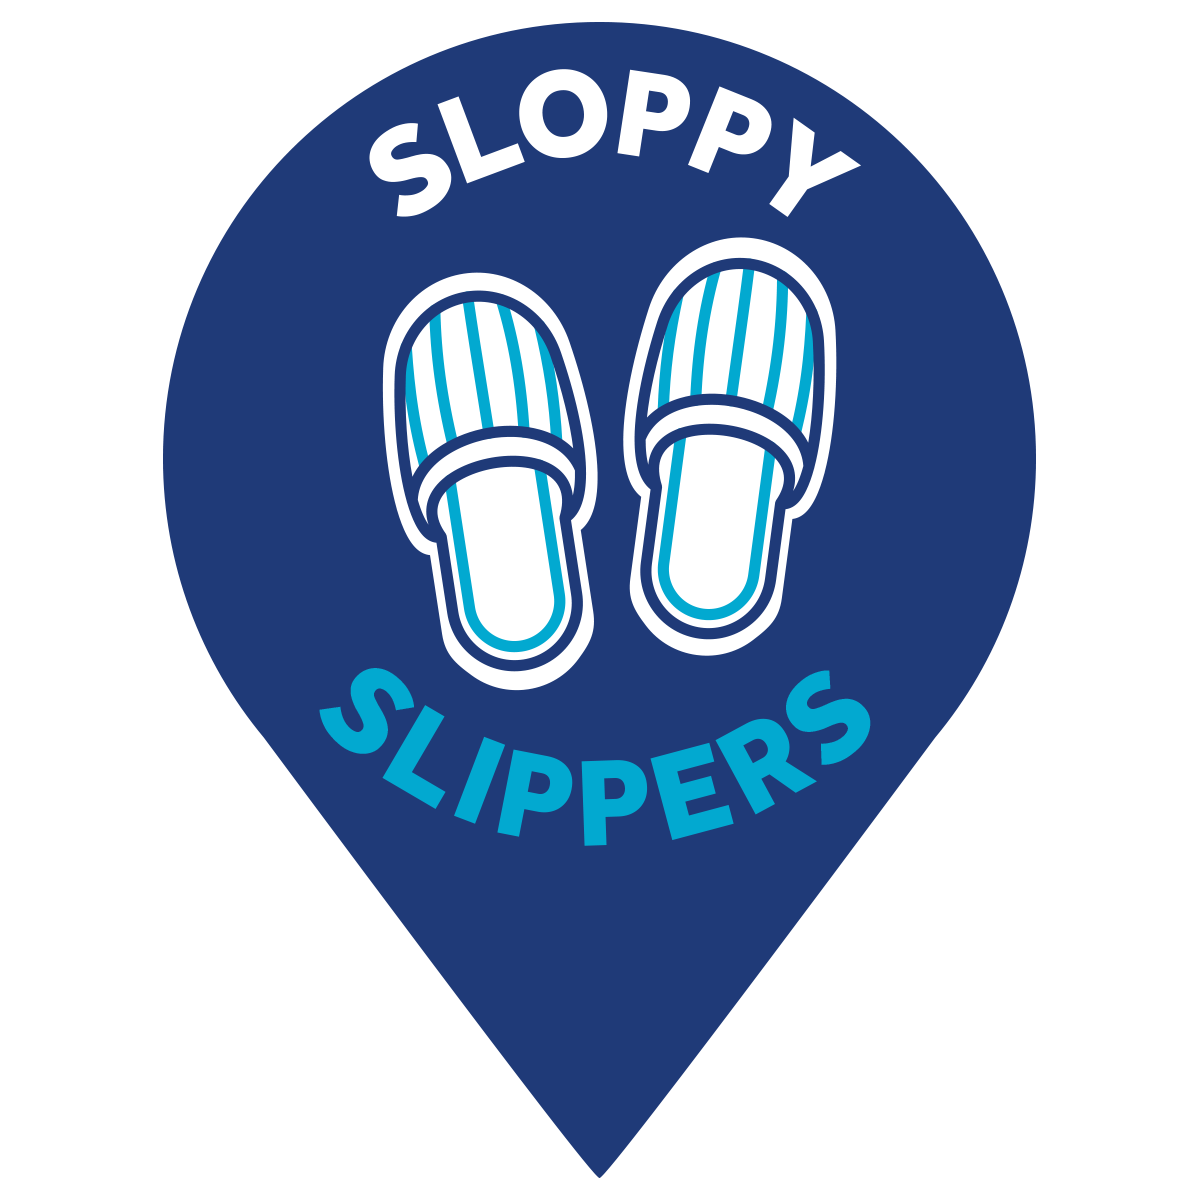 sloppy_pin